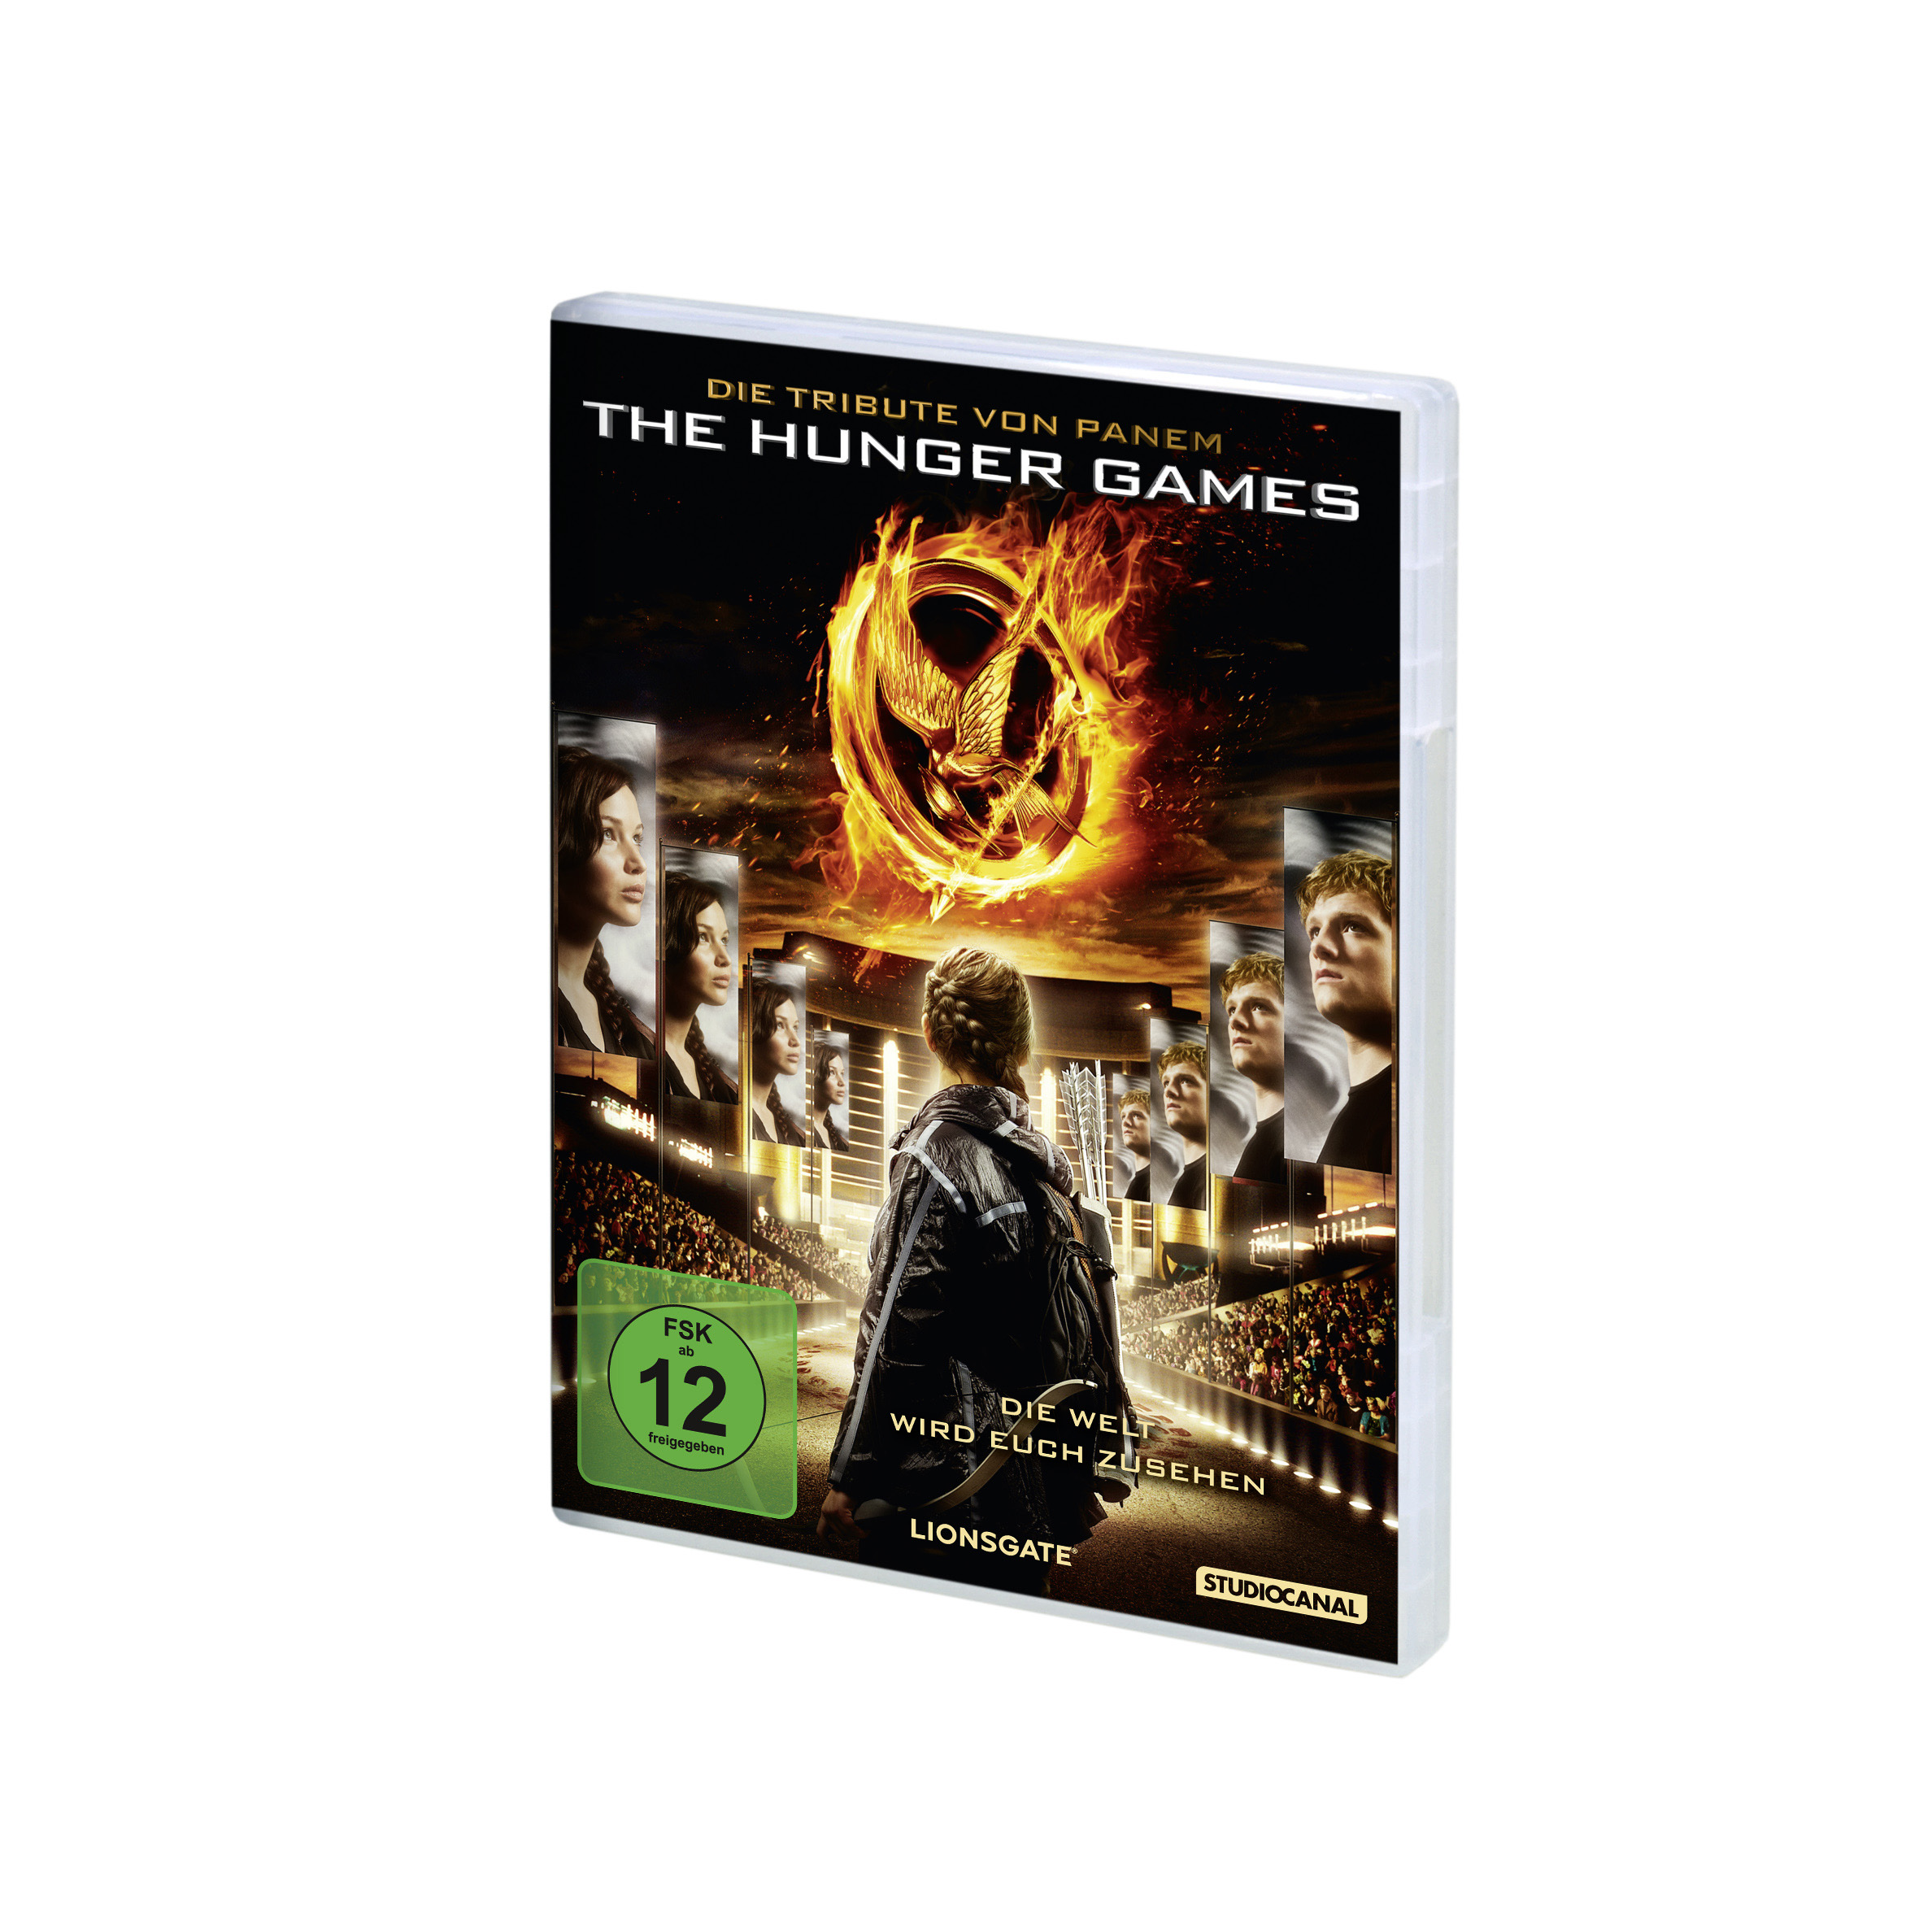 Die Tribute von Panem - The Games Hunger DVD